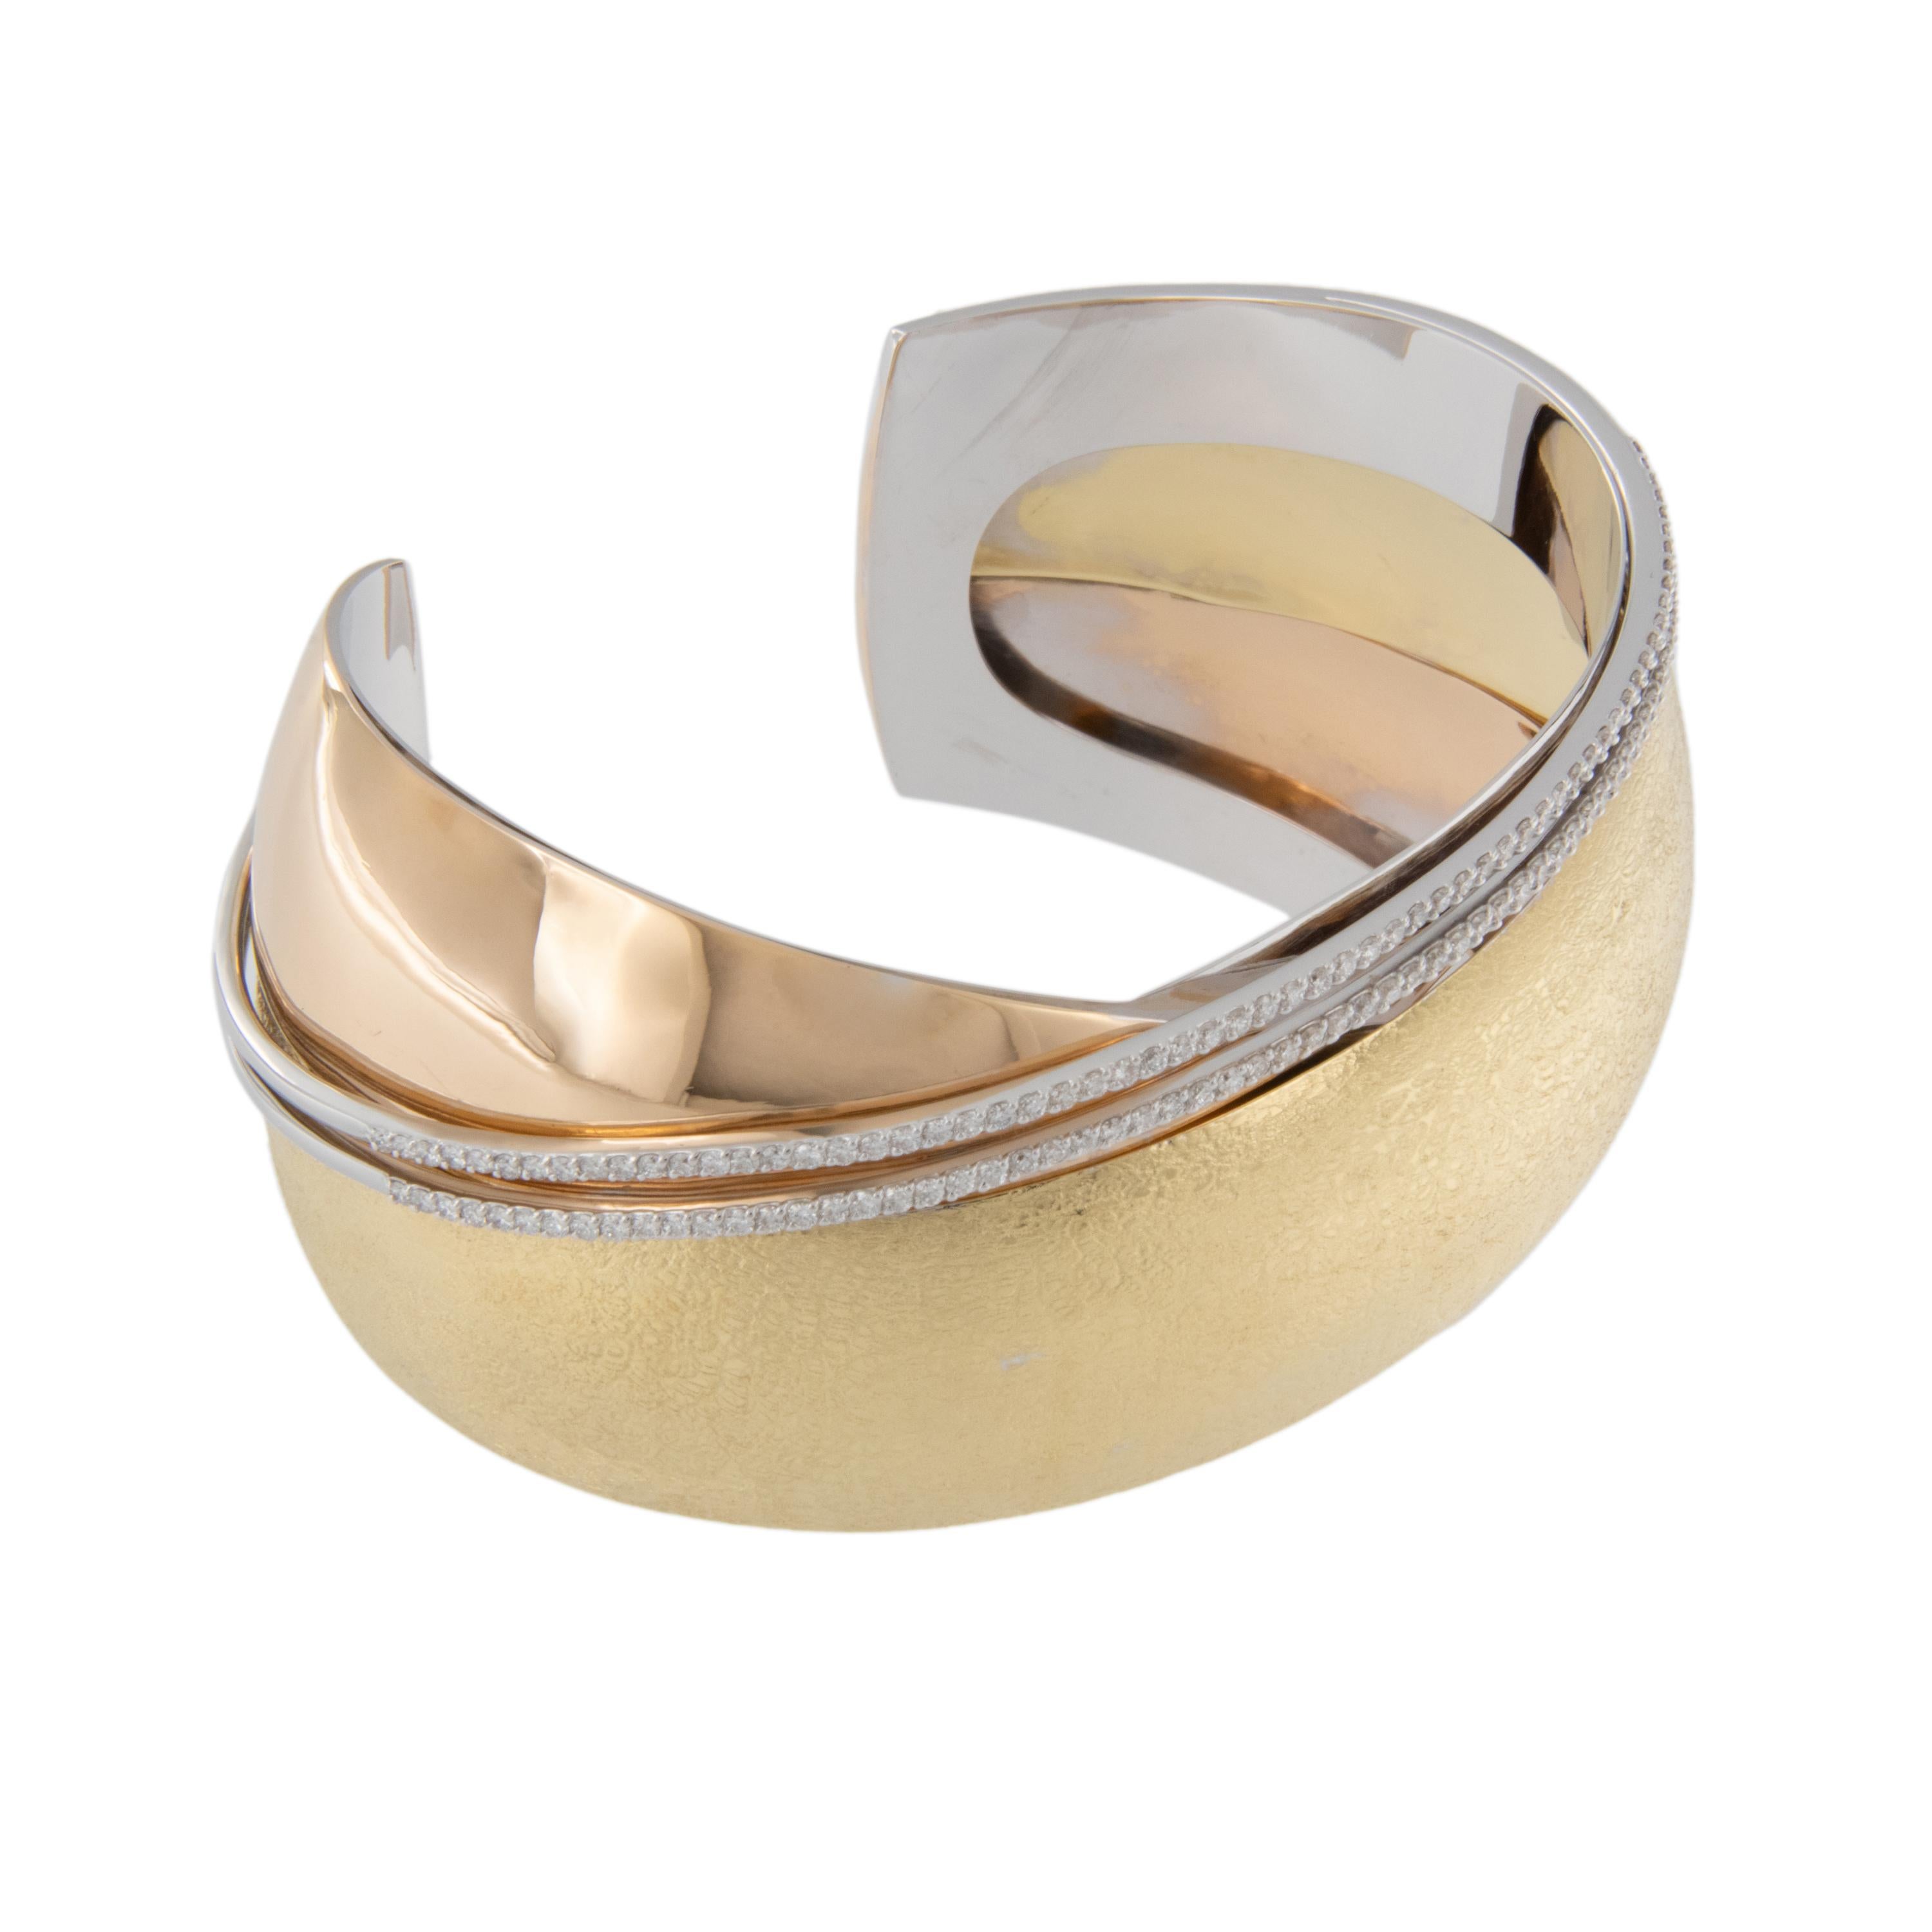 Des couleurs et des textures multiples font que ce bracelet moderne au design croisé se distingue des autres ! Fabriqué en or jaune 18 carats et agrémenté de diamants de 1,04 ctw sur deux rangs, ce bracelet est un véritable coup de cœur ! Emballage